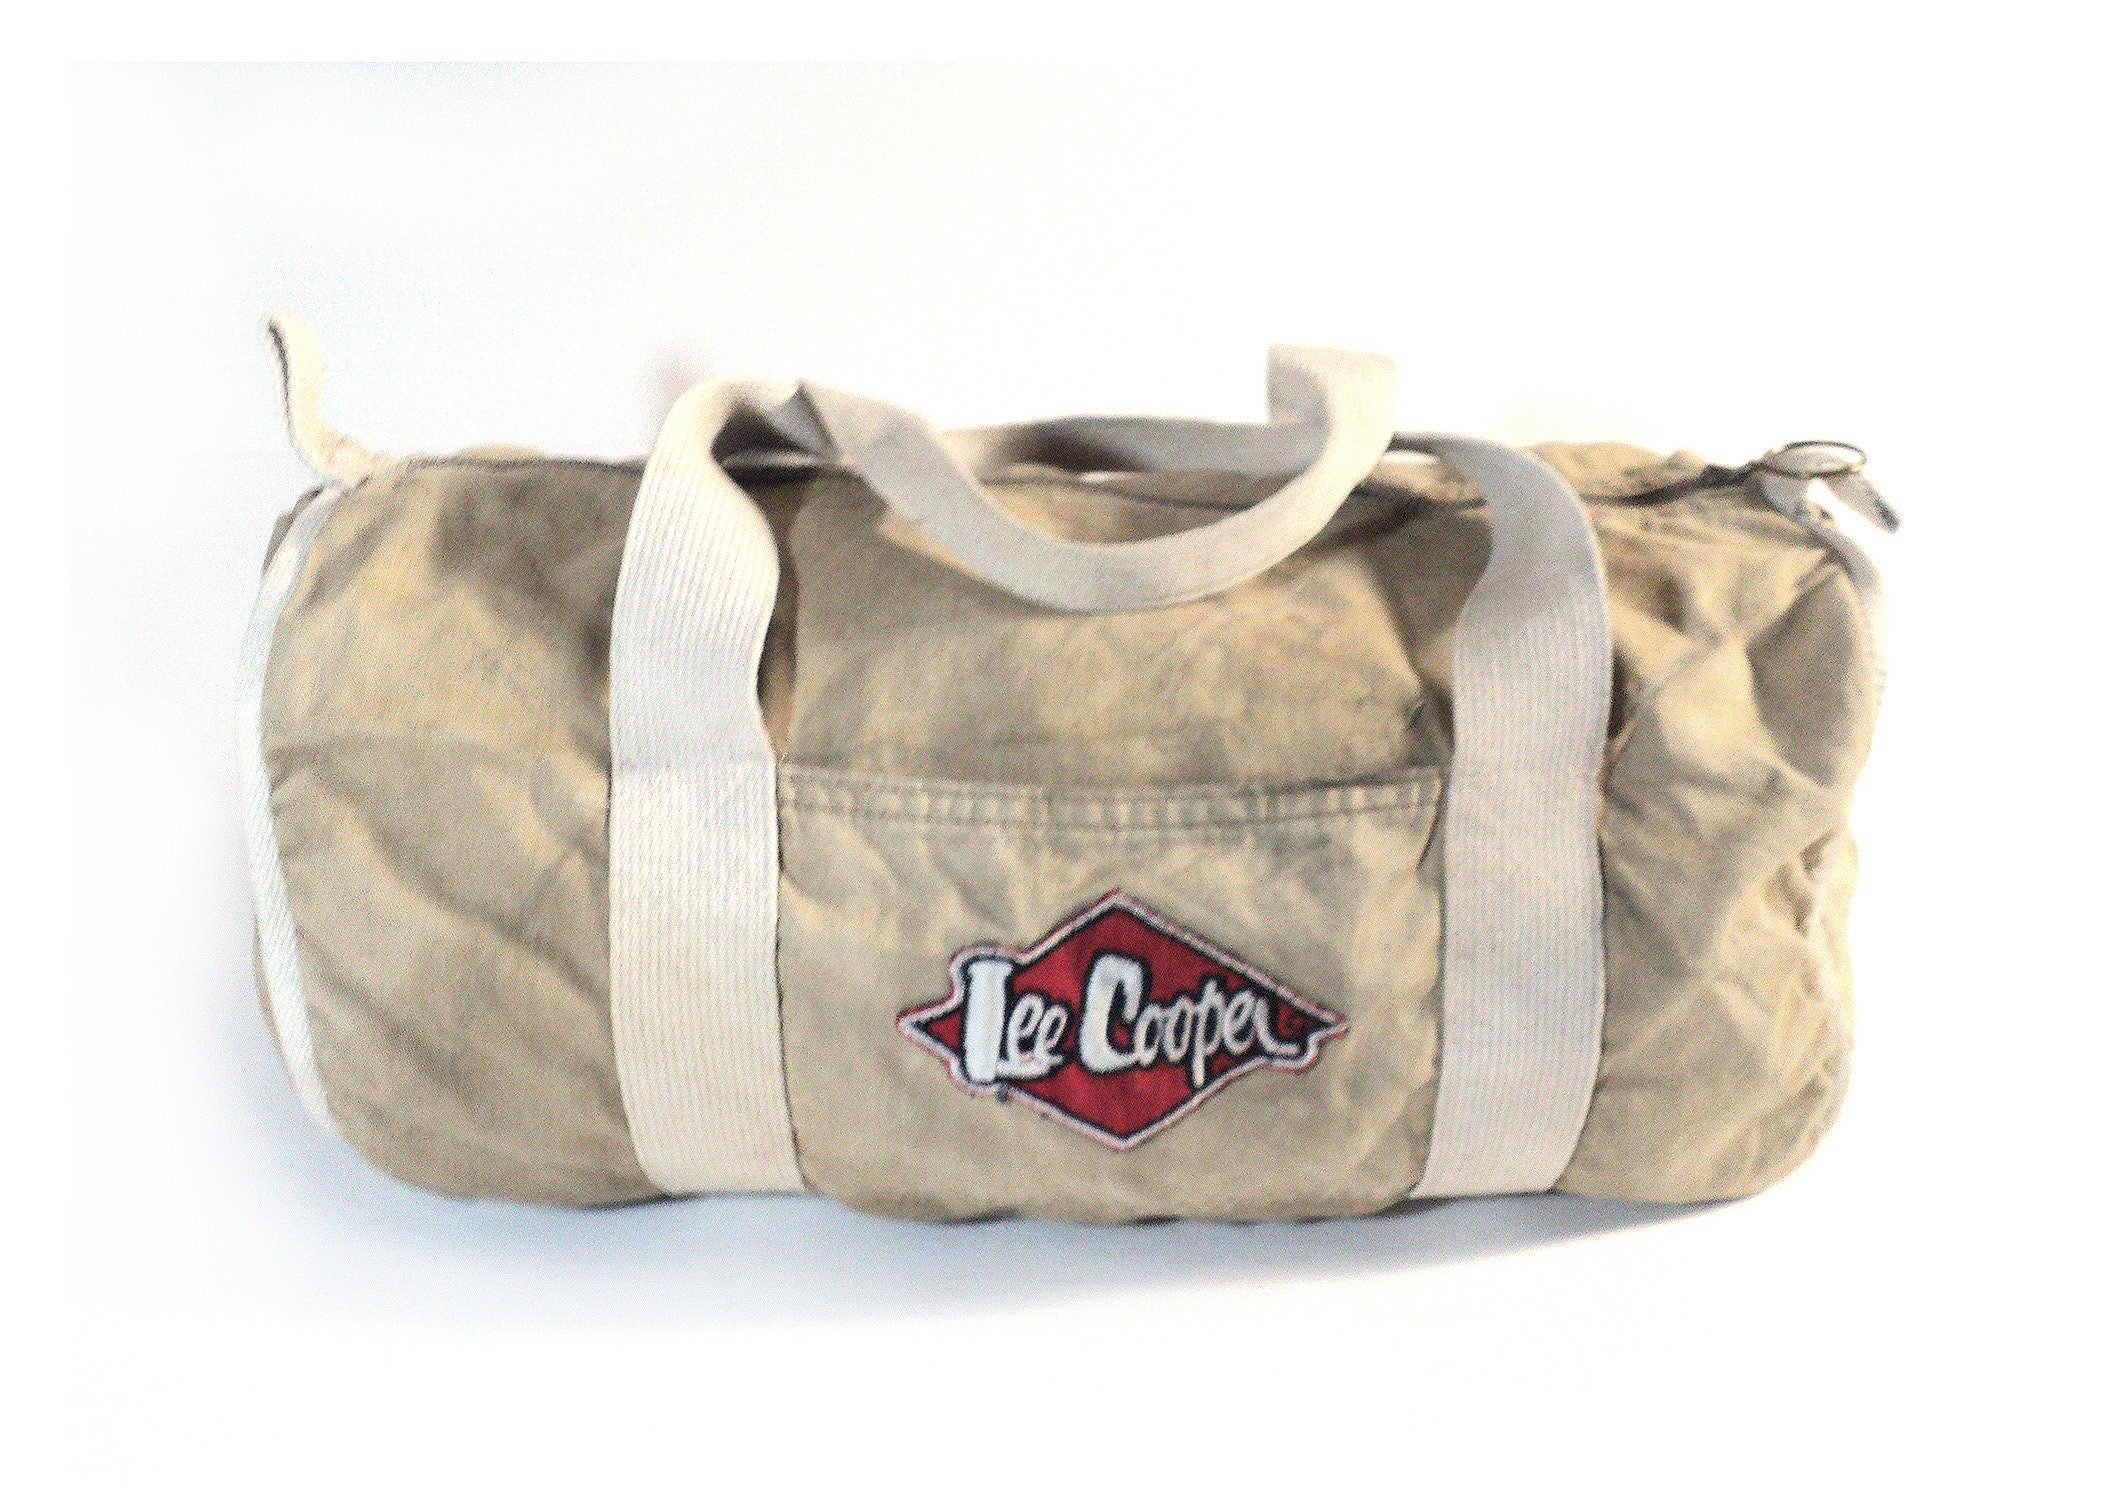 Lee Cooper Beige Bolster Sports Bag Vintage Canvas Travel - Etsy 日本